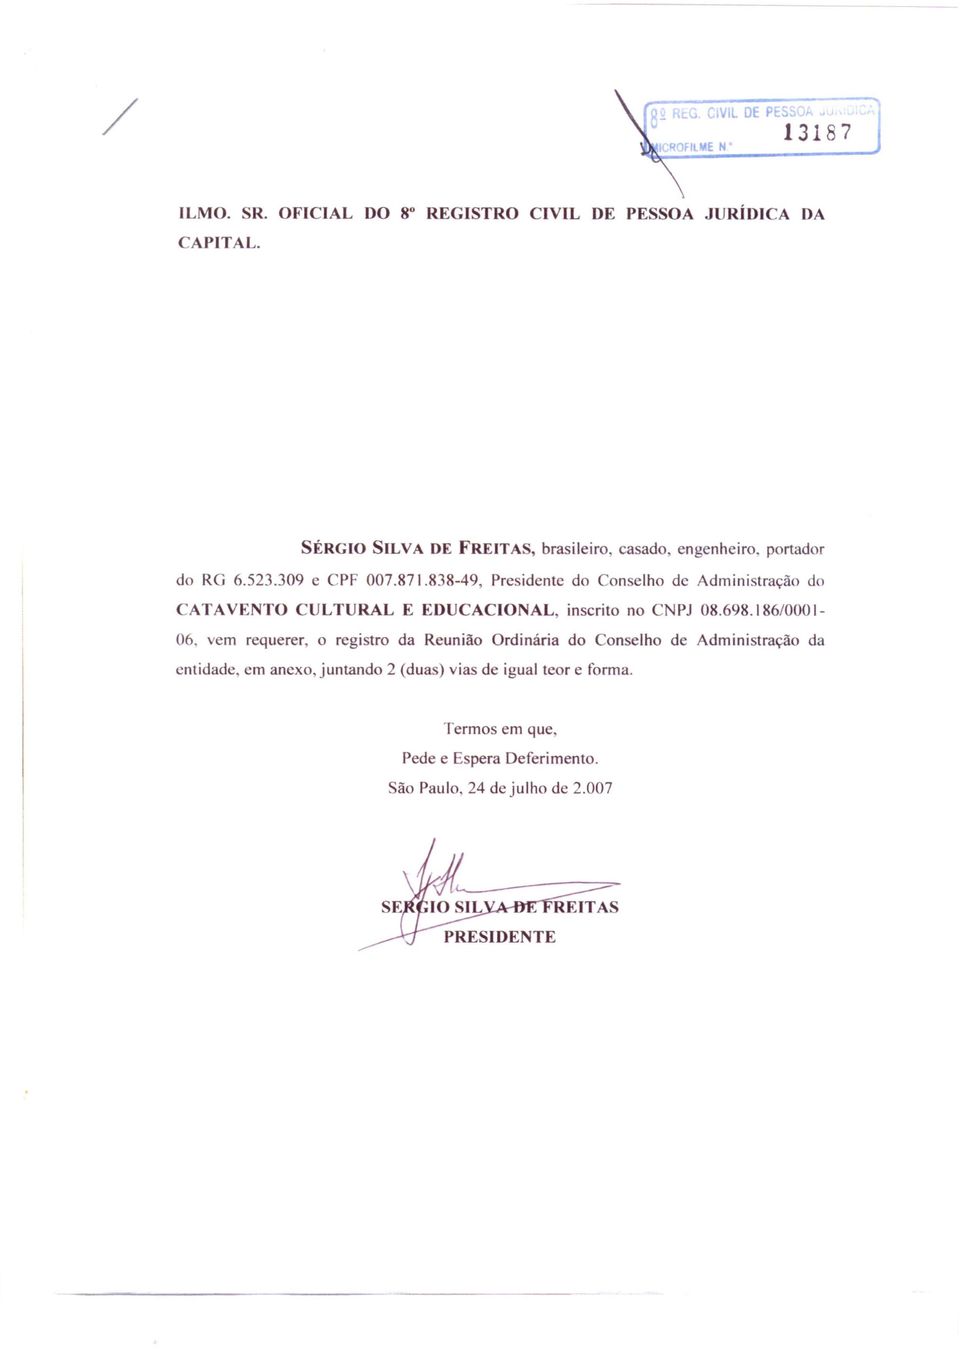 838-49, Presidente do Conselho de Administração do CATAVENTO CULTURAL E EDUCACIO AL, inscrito no CNPJ 08.698.186/0001-06.